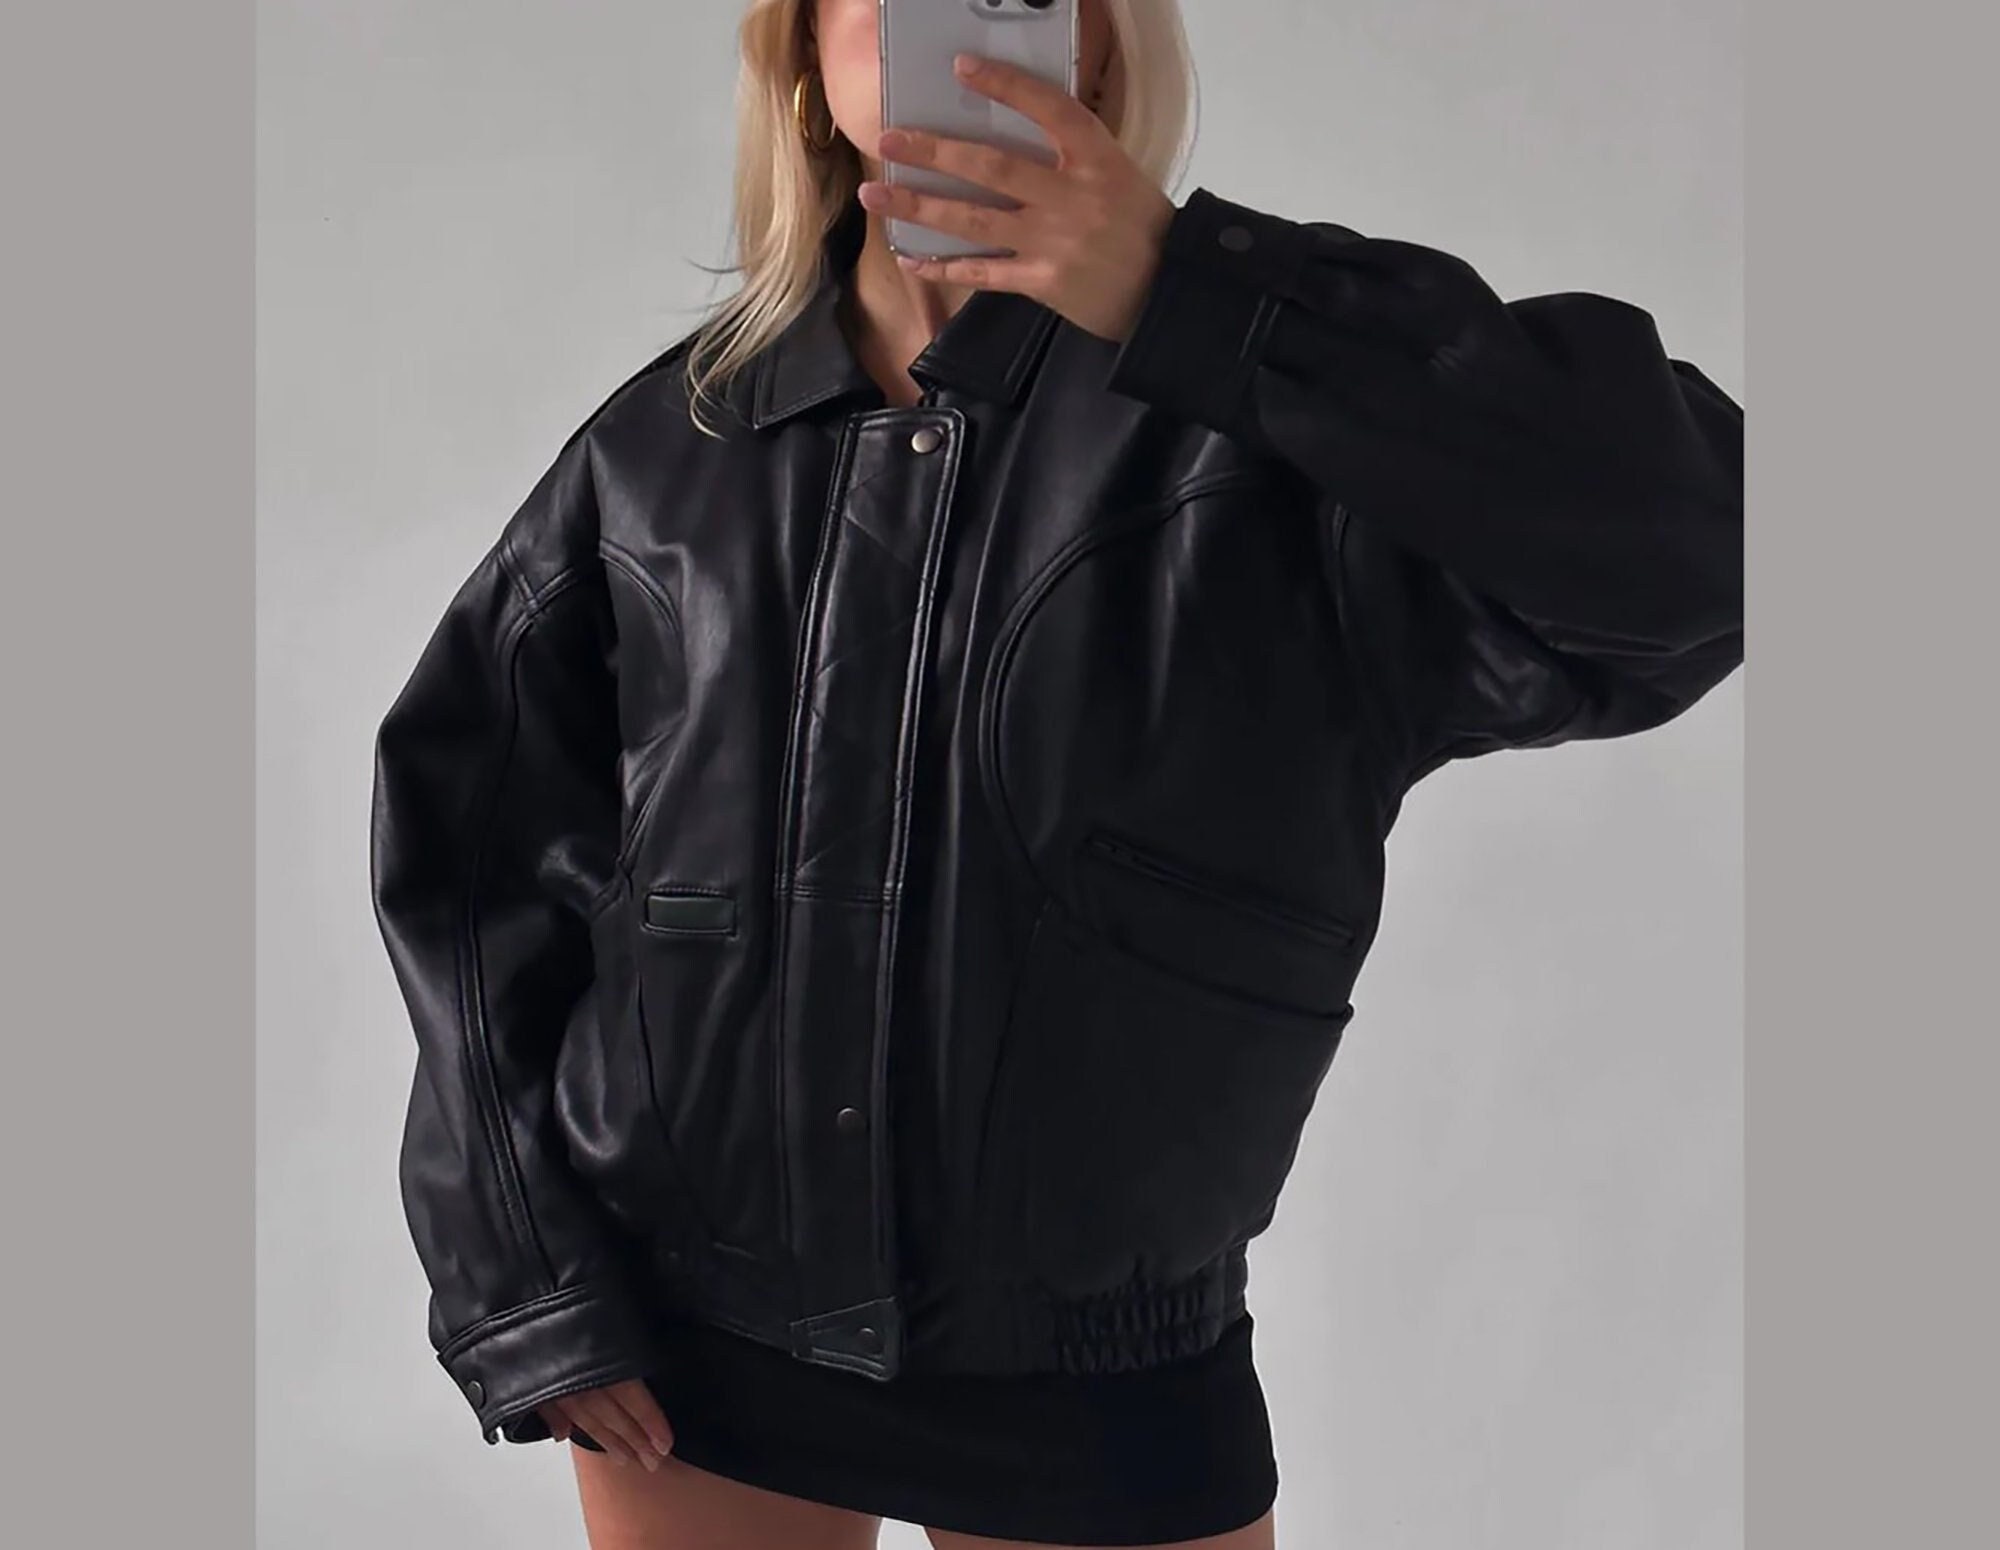 90s Leather Jacket - Etsy